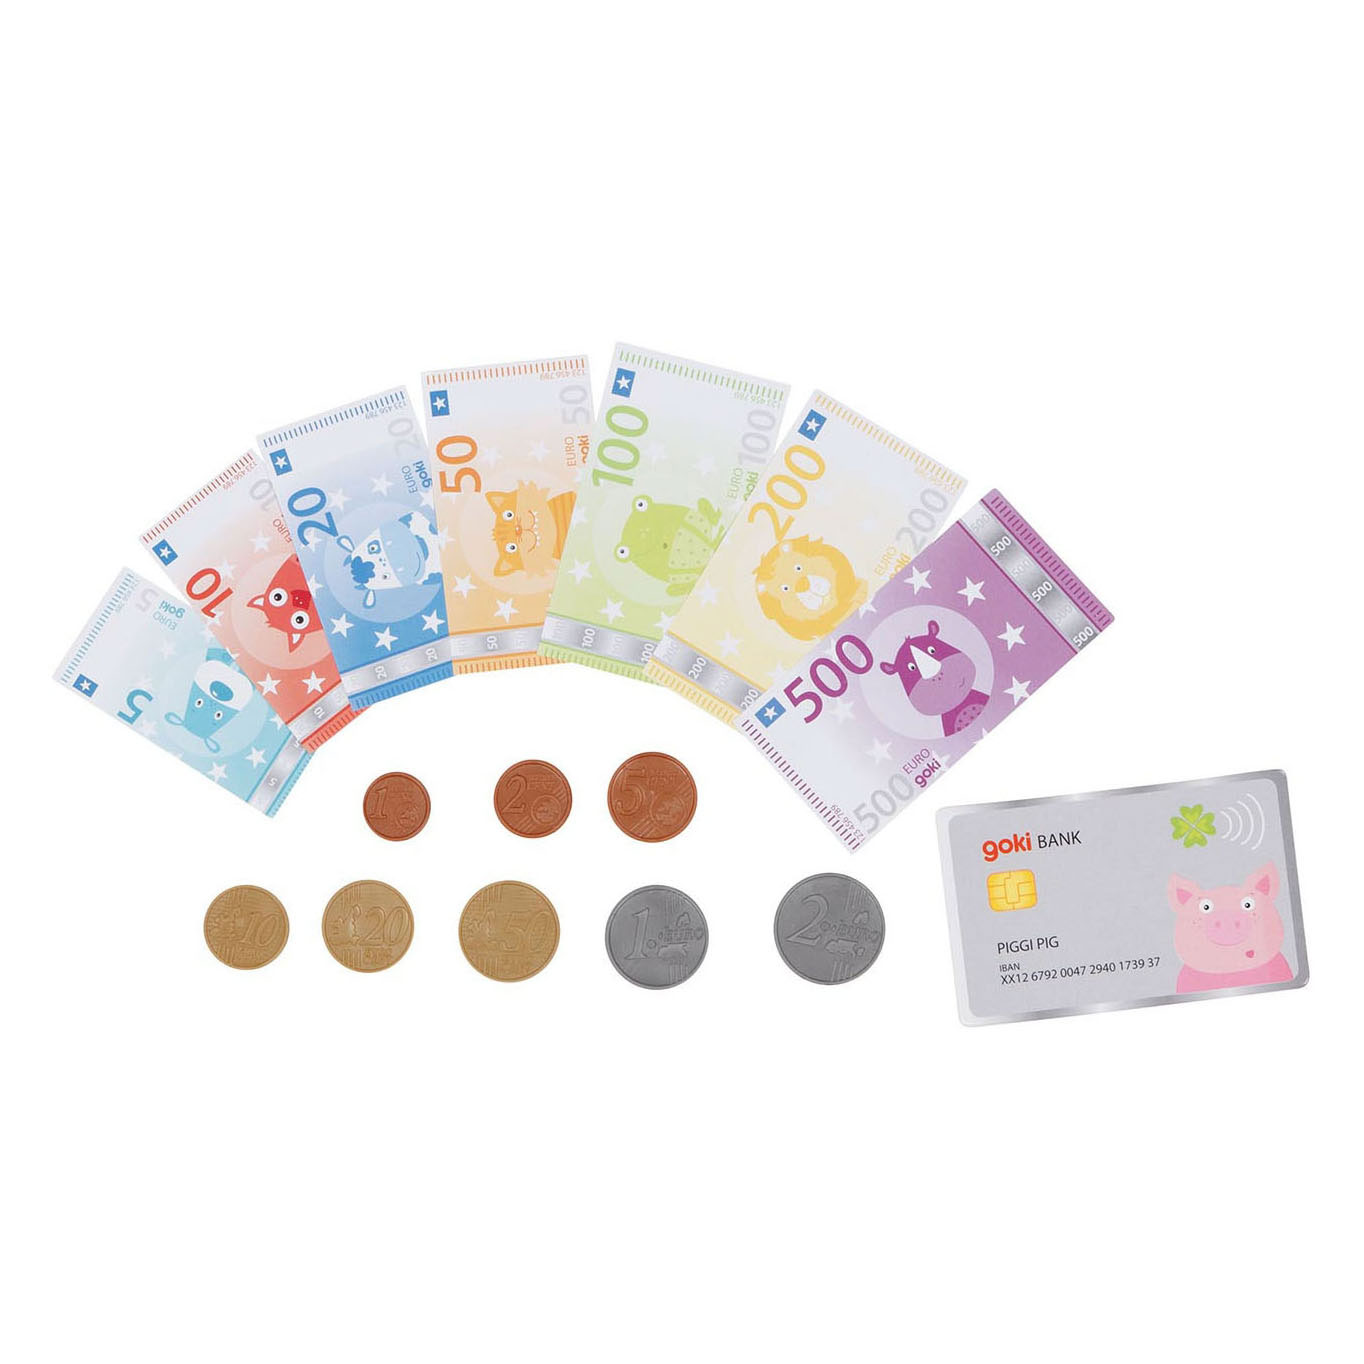 Goki Play Money Animaux avec carte de crédit et pièces de monnaie, 117 pcs.